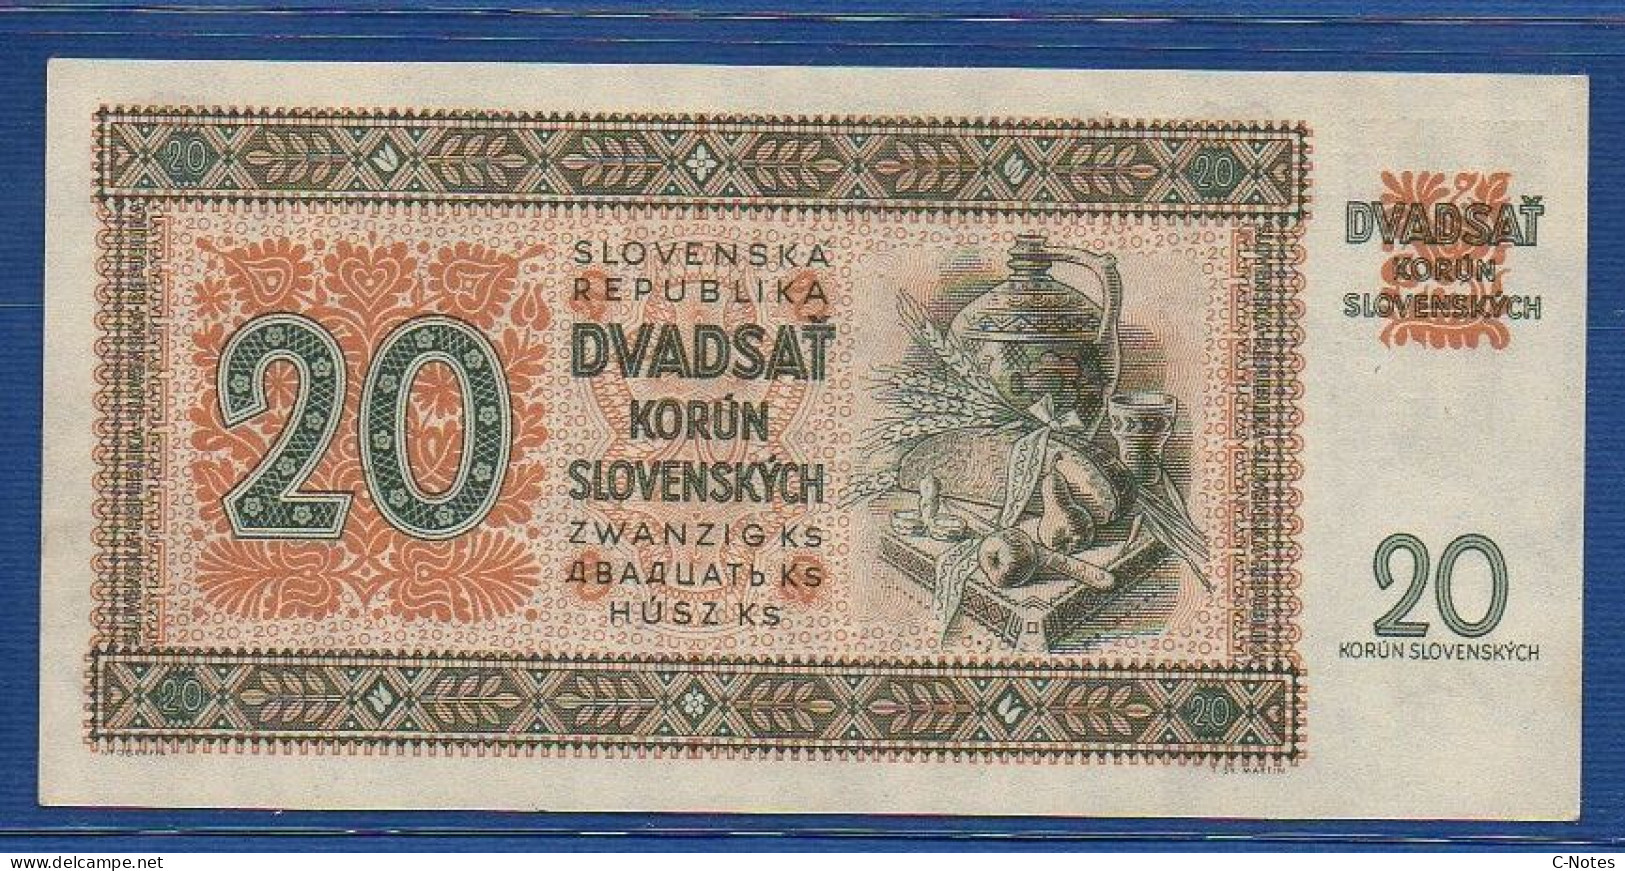 SLOVAKIA - P. 7a – 20 Korún Slovenských 1942 UNC- Serie Nz11 785452 - Slovacchia